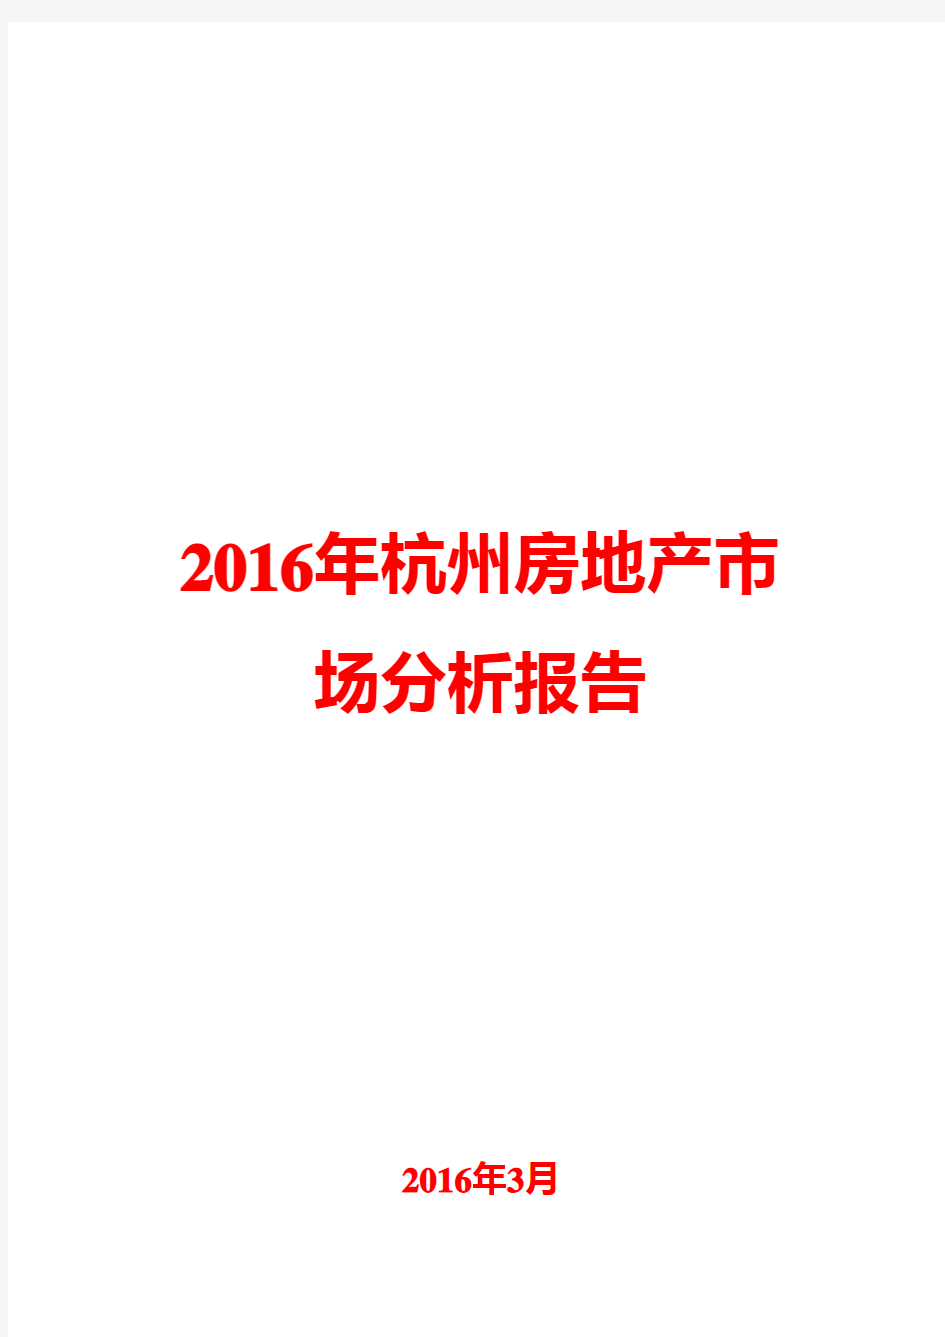 2016年杭州房地产市场分析报告